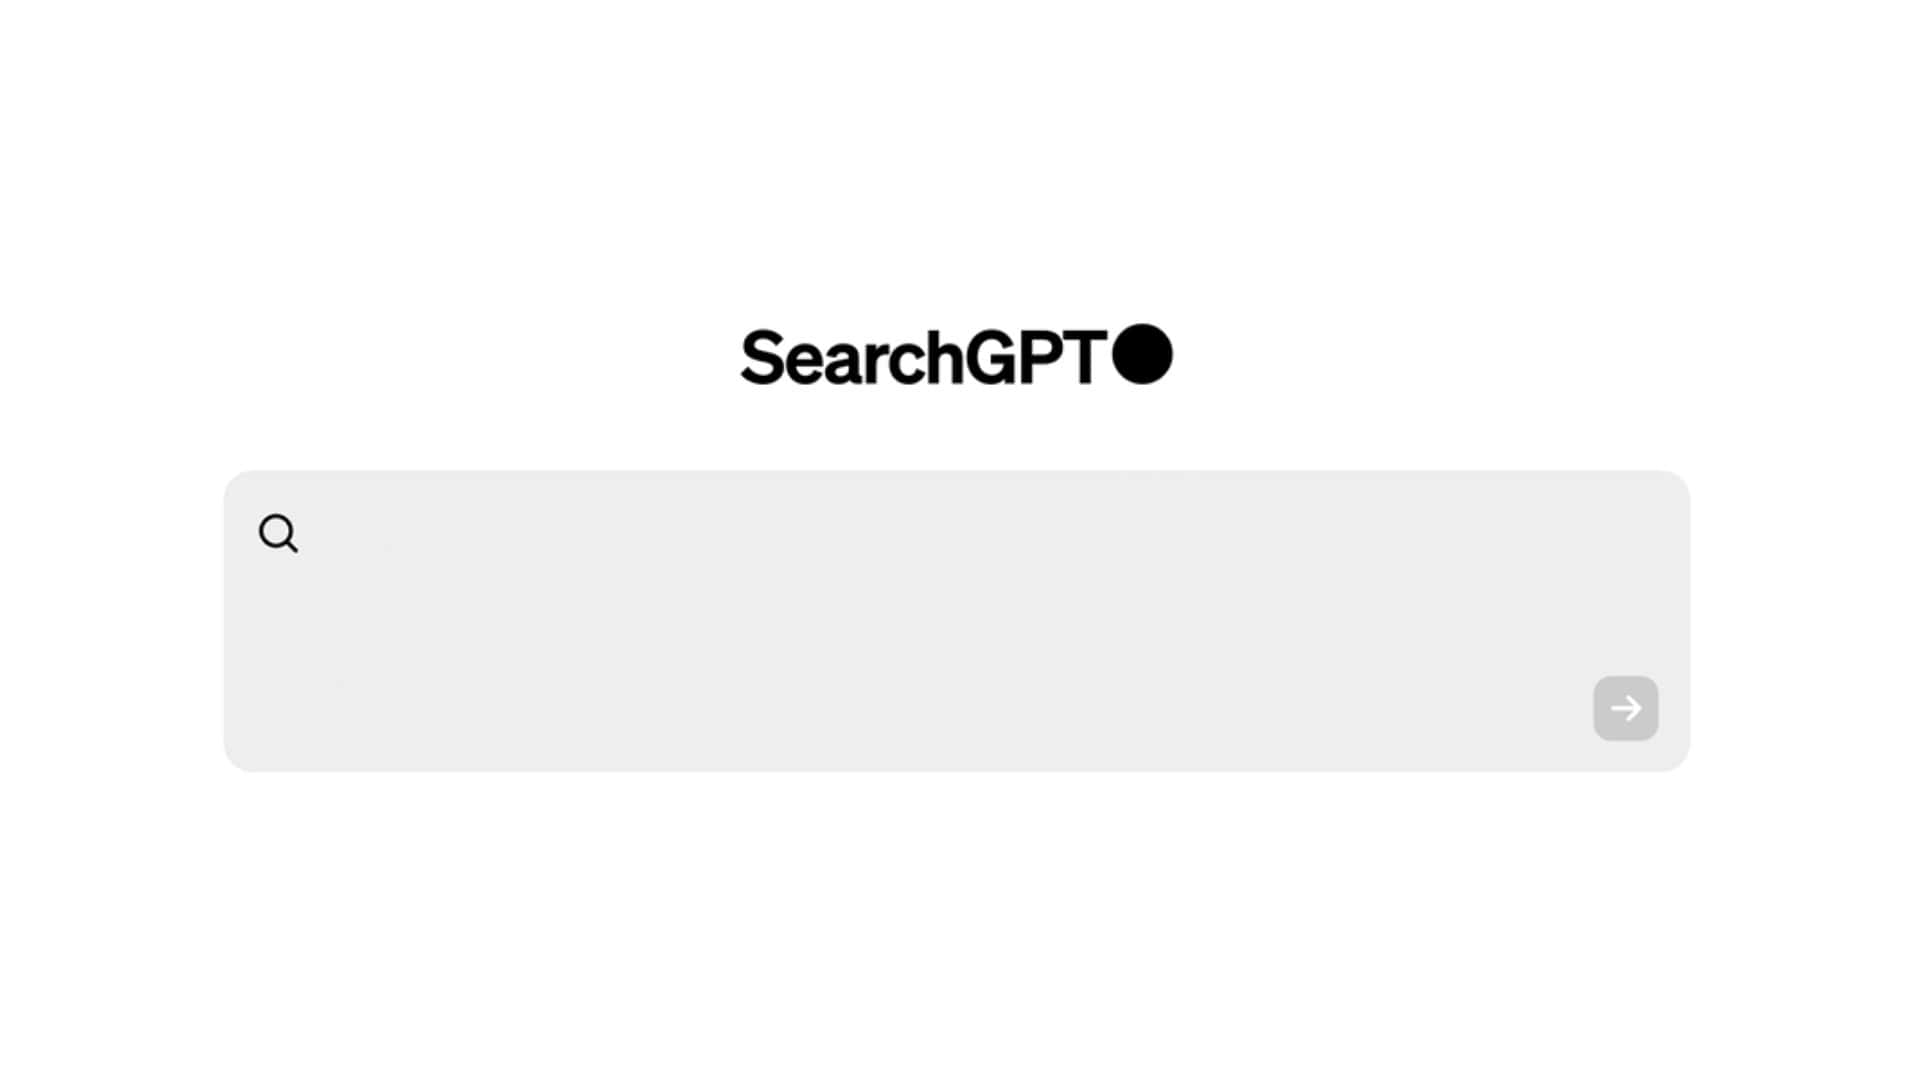 Die Suchmaschine von OpenAI ist SearchGPT, aber Sie müssen warten